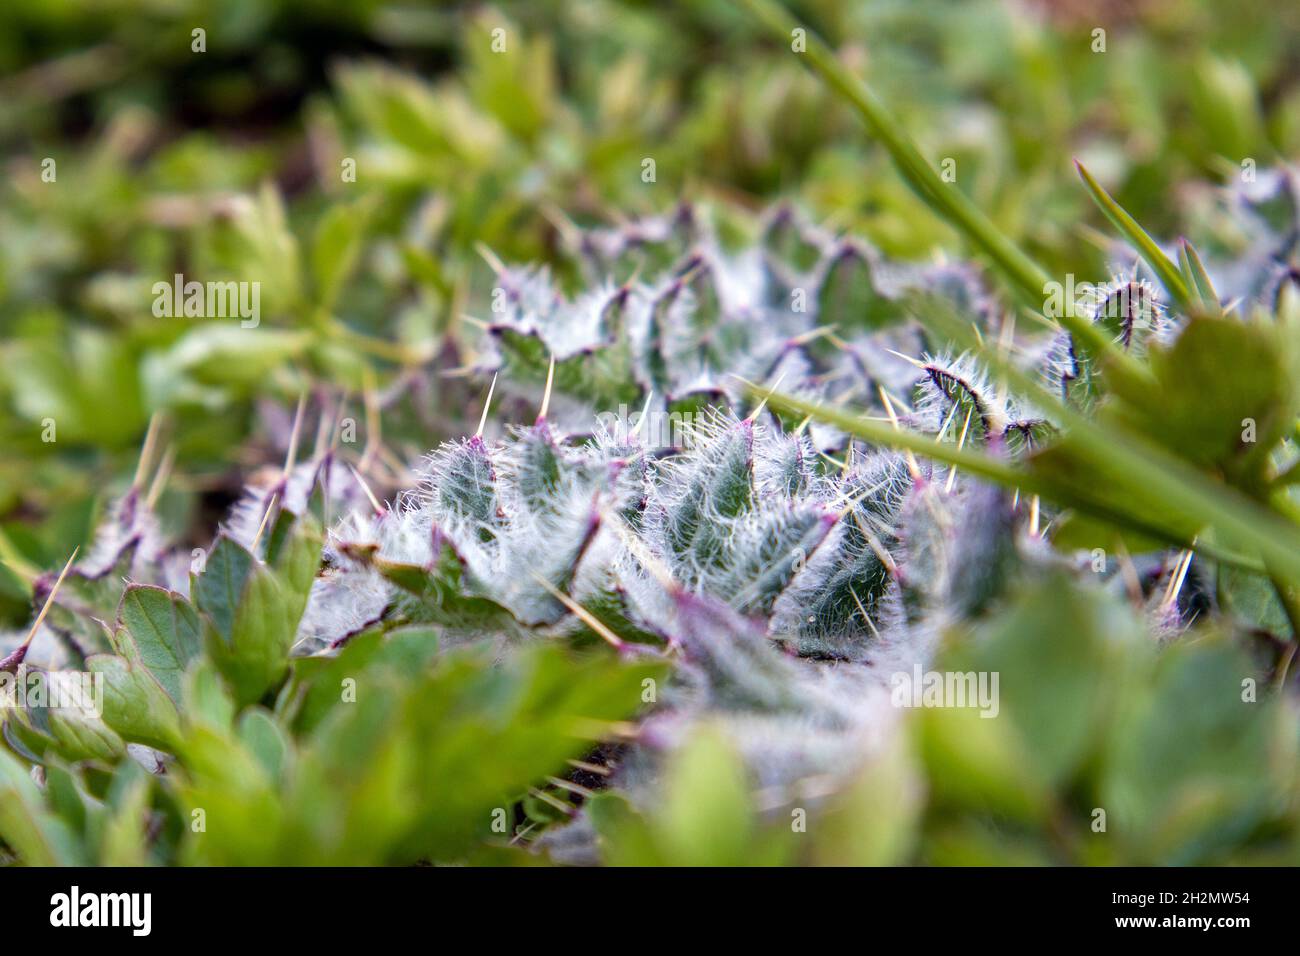 Hojas de la planta de la estepa espinosa joven Cirsium arvense o thistle cerca para arriba, una clase de maleza Foto de stock